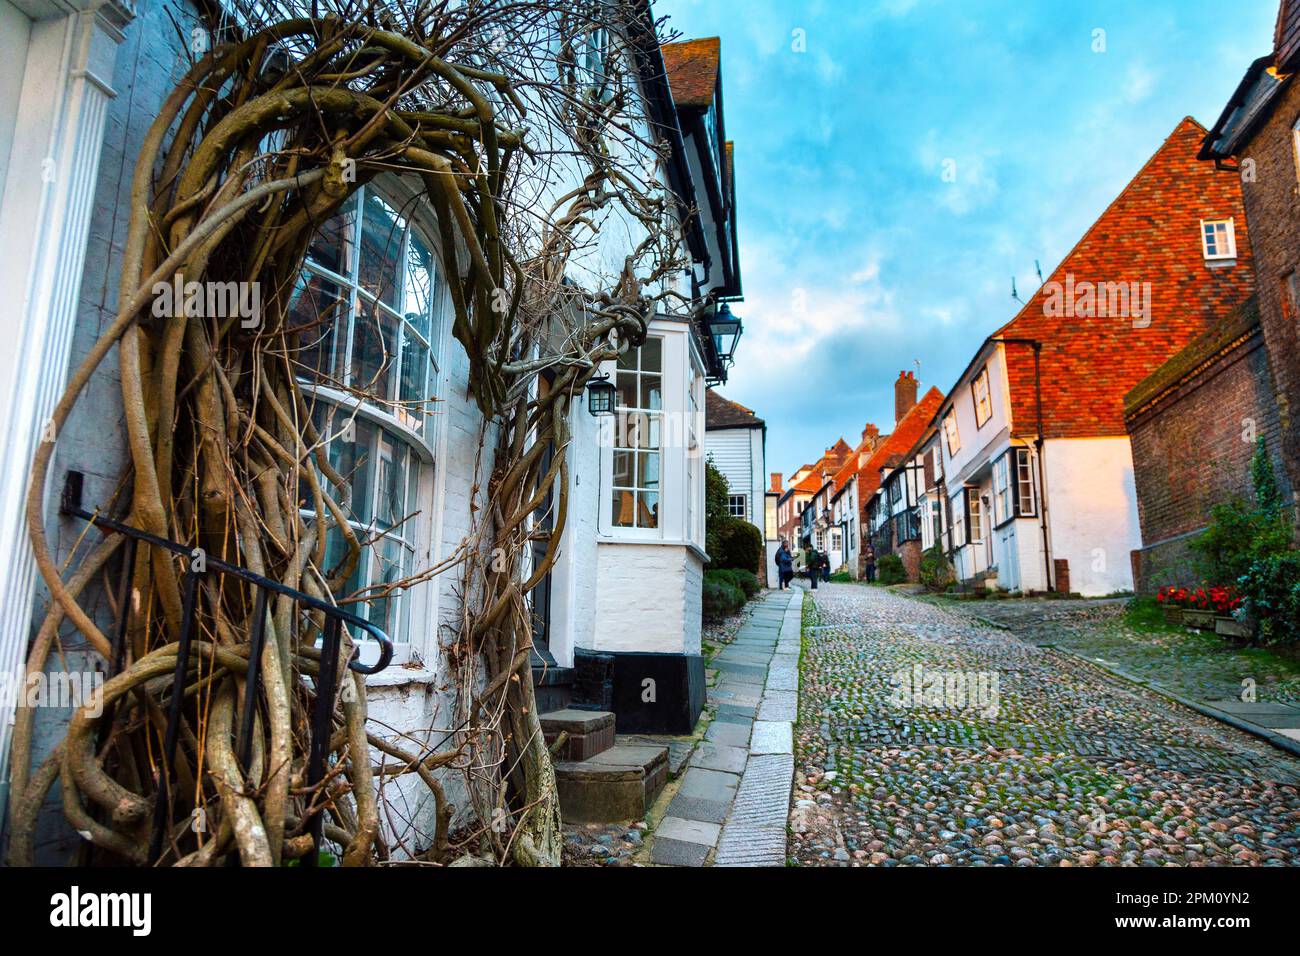 Charmante rue de la Sirène pavée avec maisons médiévales, Rye, East Sussex, Angleterre, Royaume-Uni Banque D'Images